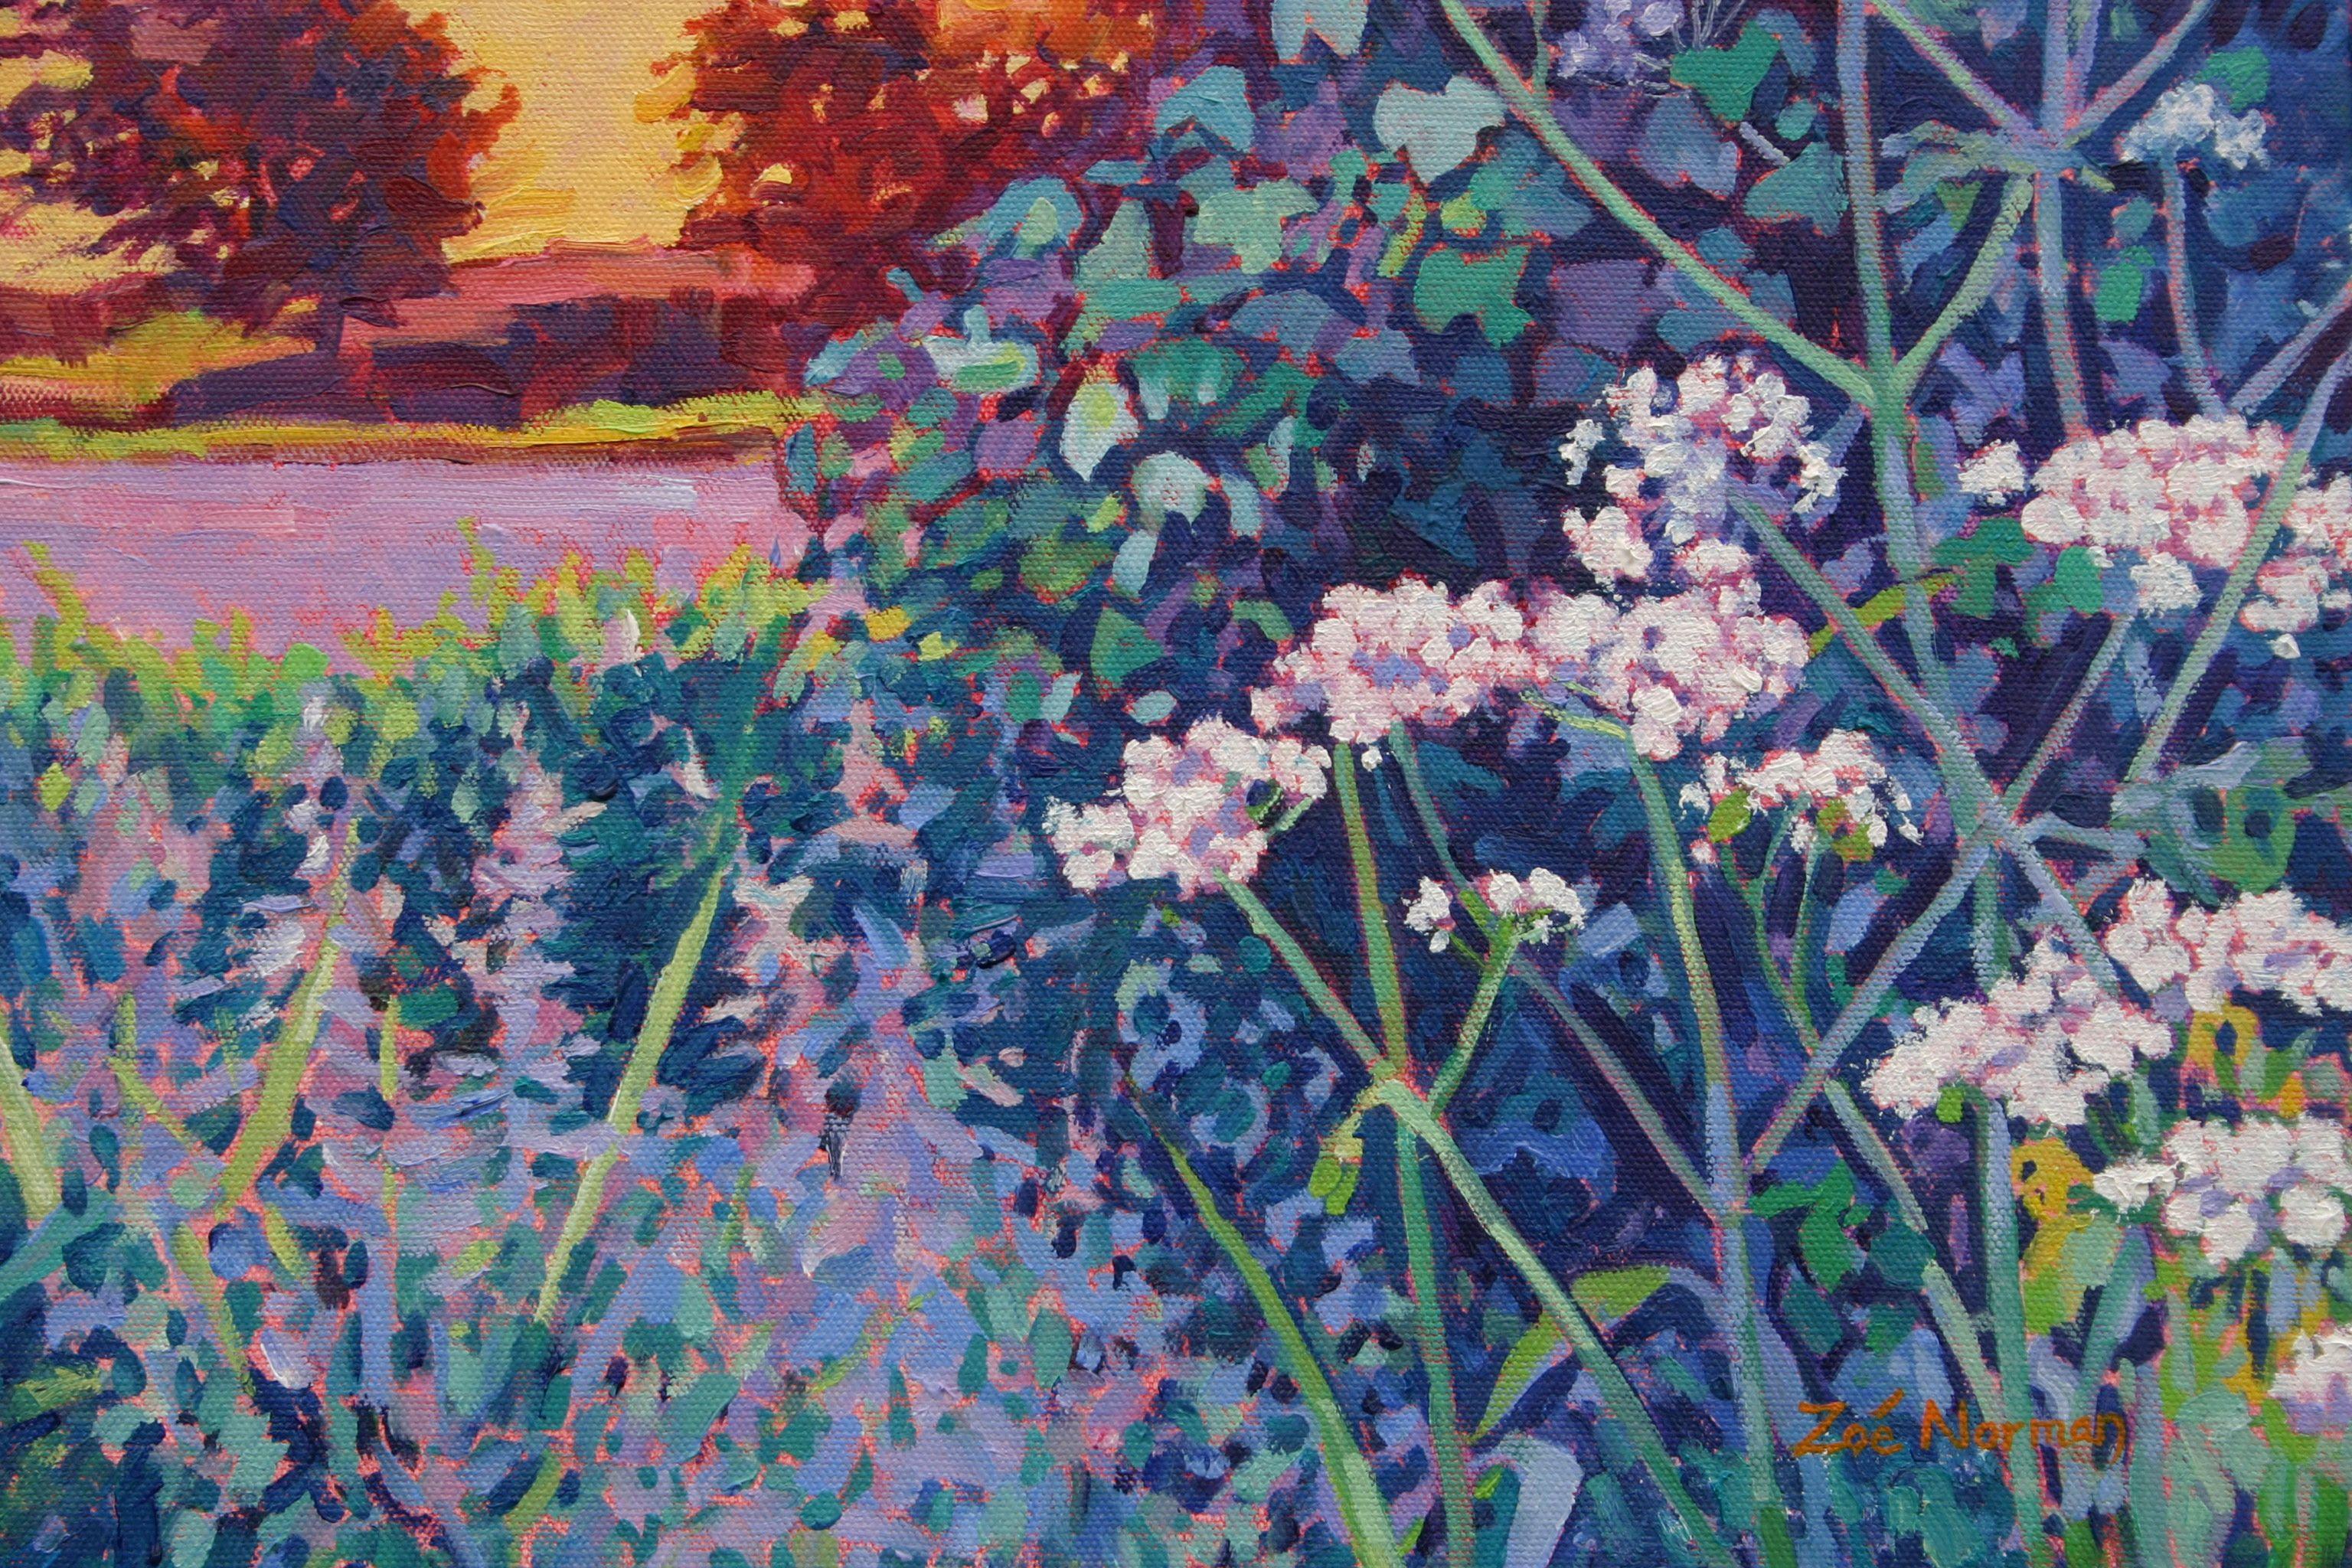 L'impressionnisme contemporain    Cette peinture a été inspirée par une promenade nocturne. Les jolies teintes bleues, vertes et violettes du persil de vache et des herbes du premier plan contrebalancent la lueur jaune brûlé et orange du soleil à